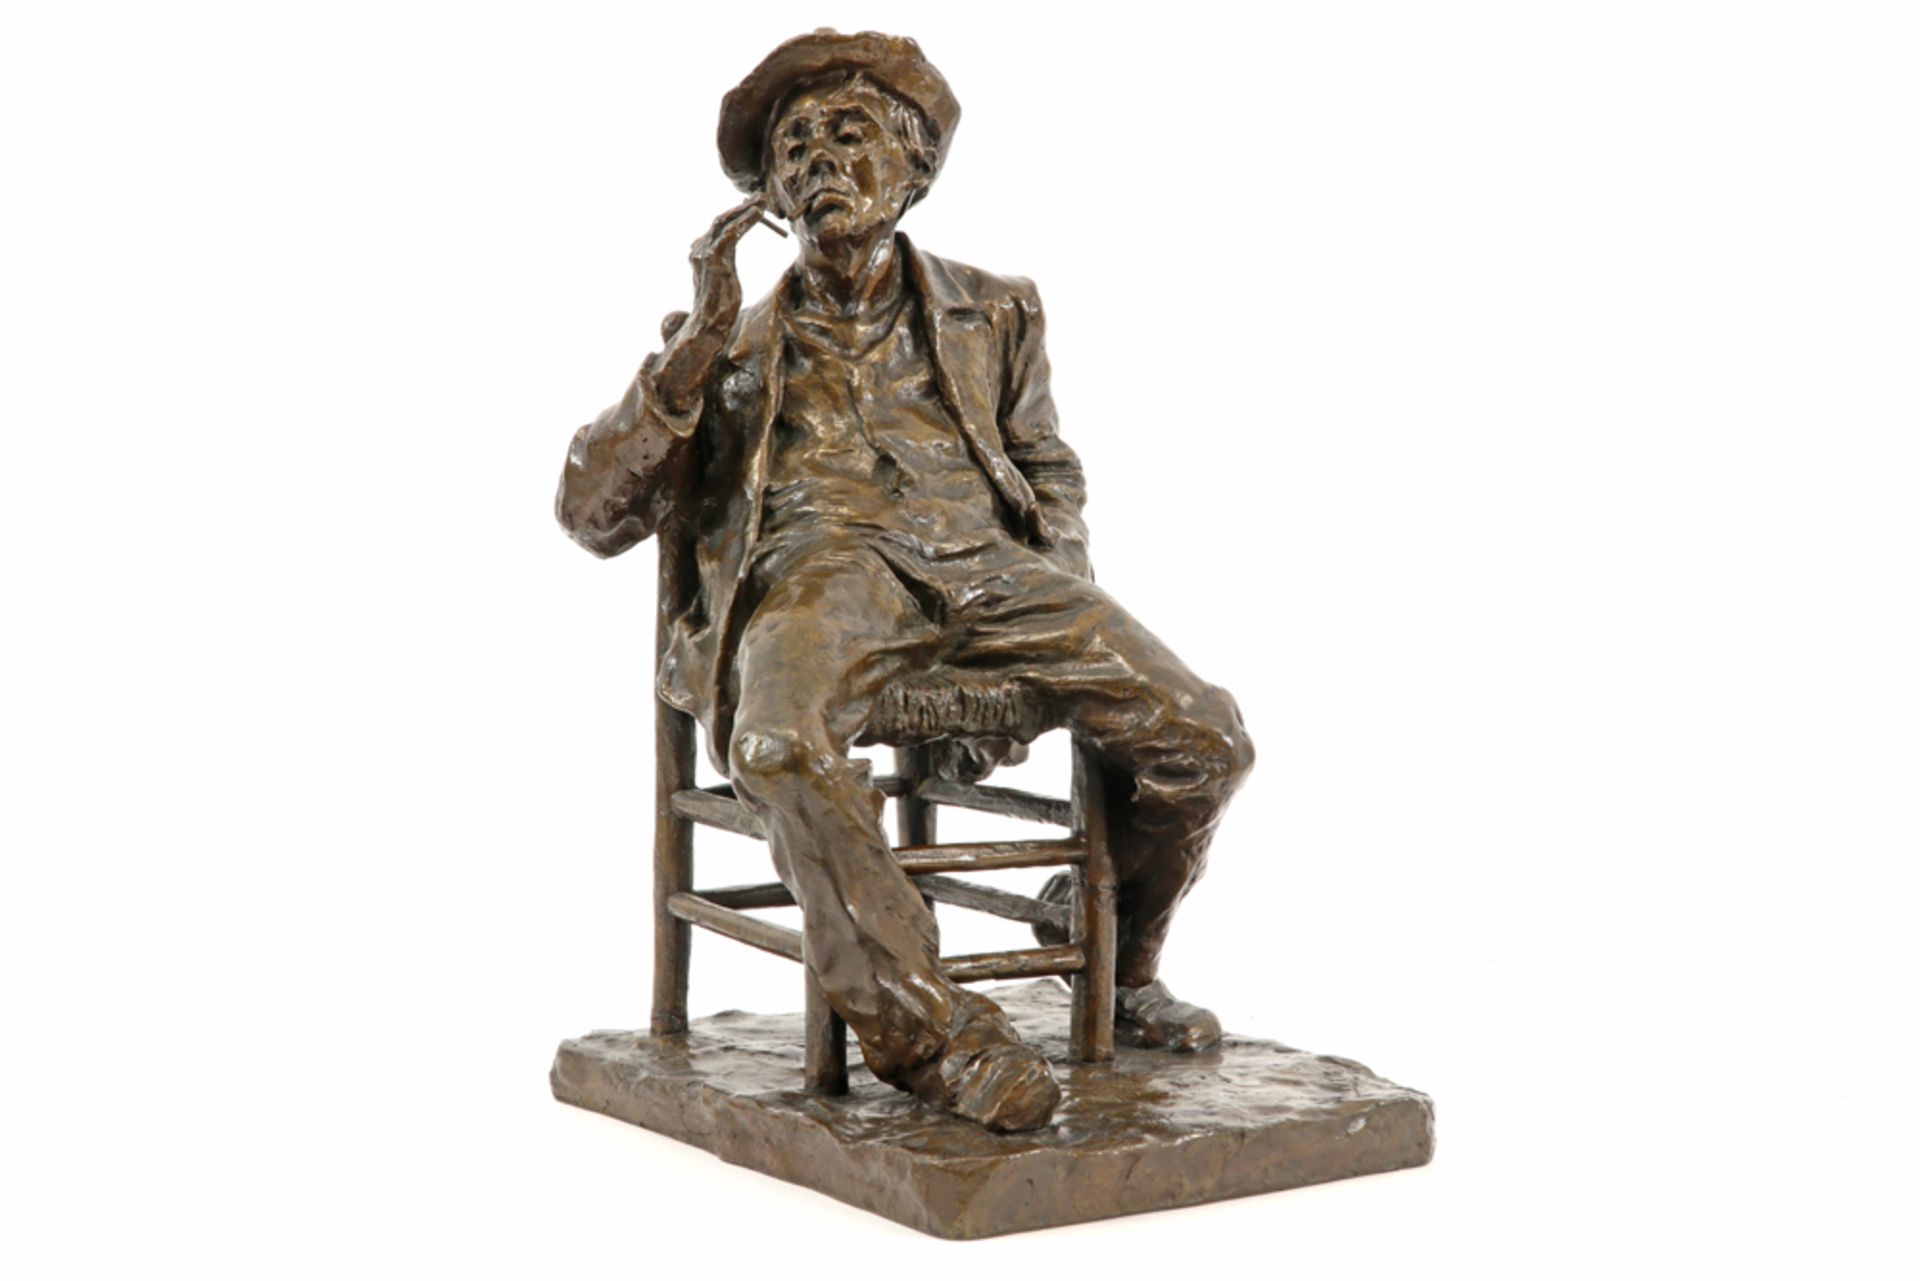 late 19th/early 20th Cent. Dutch sculpture in bronze - signed Charles Van Wijk || VAN WIJK